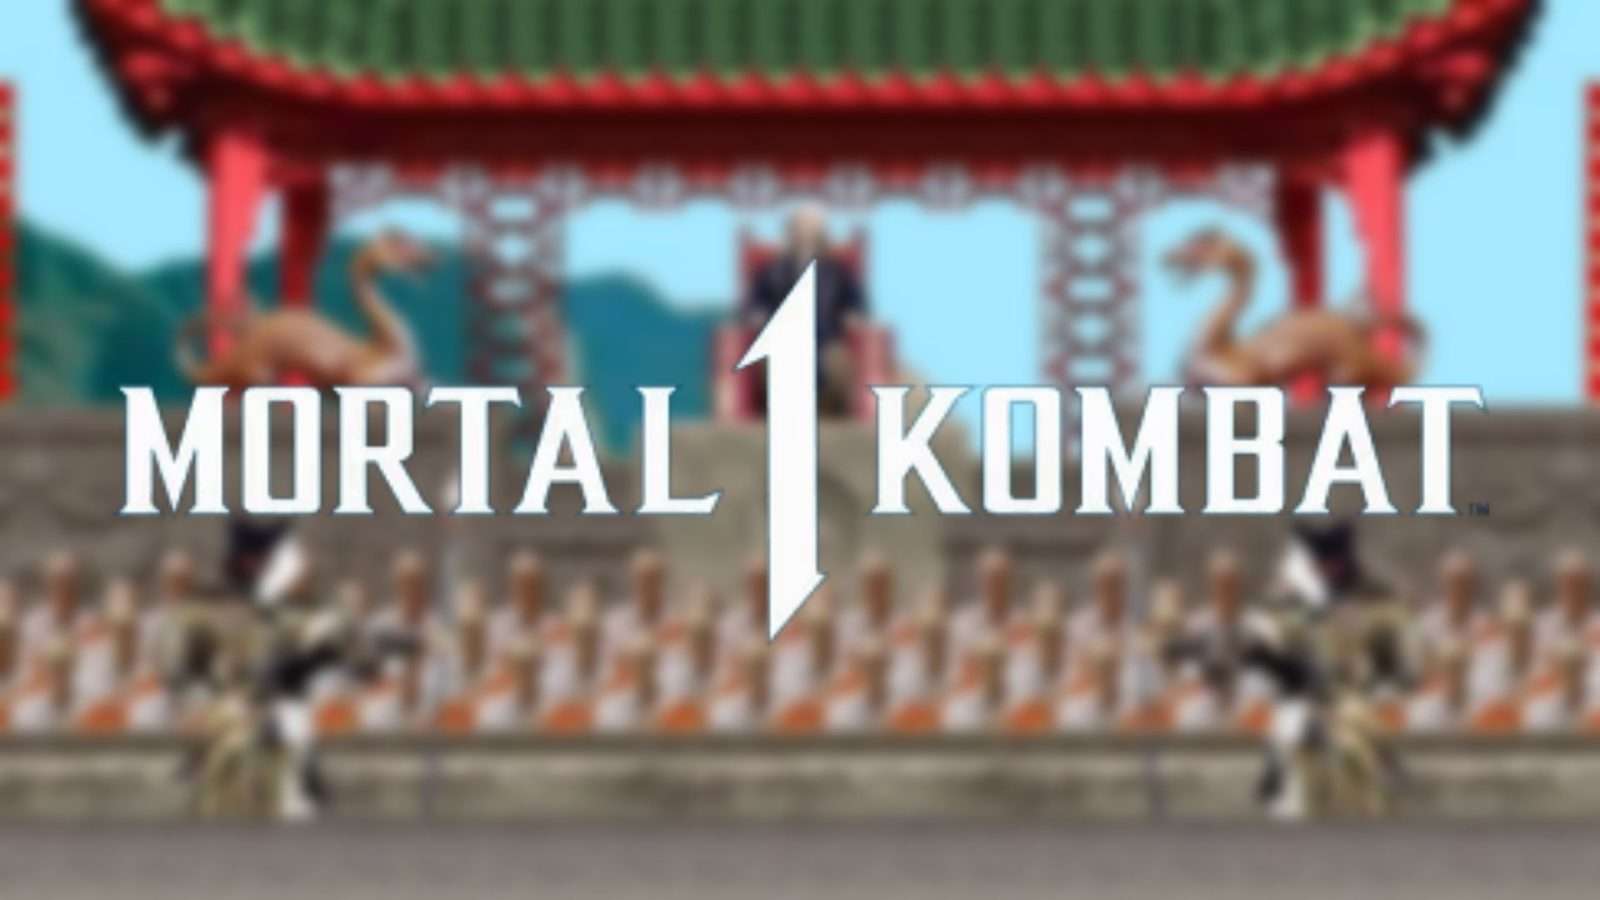 mortal kombat 1 logo on stage